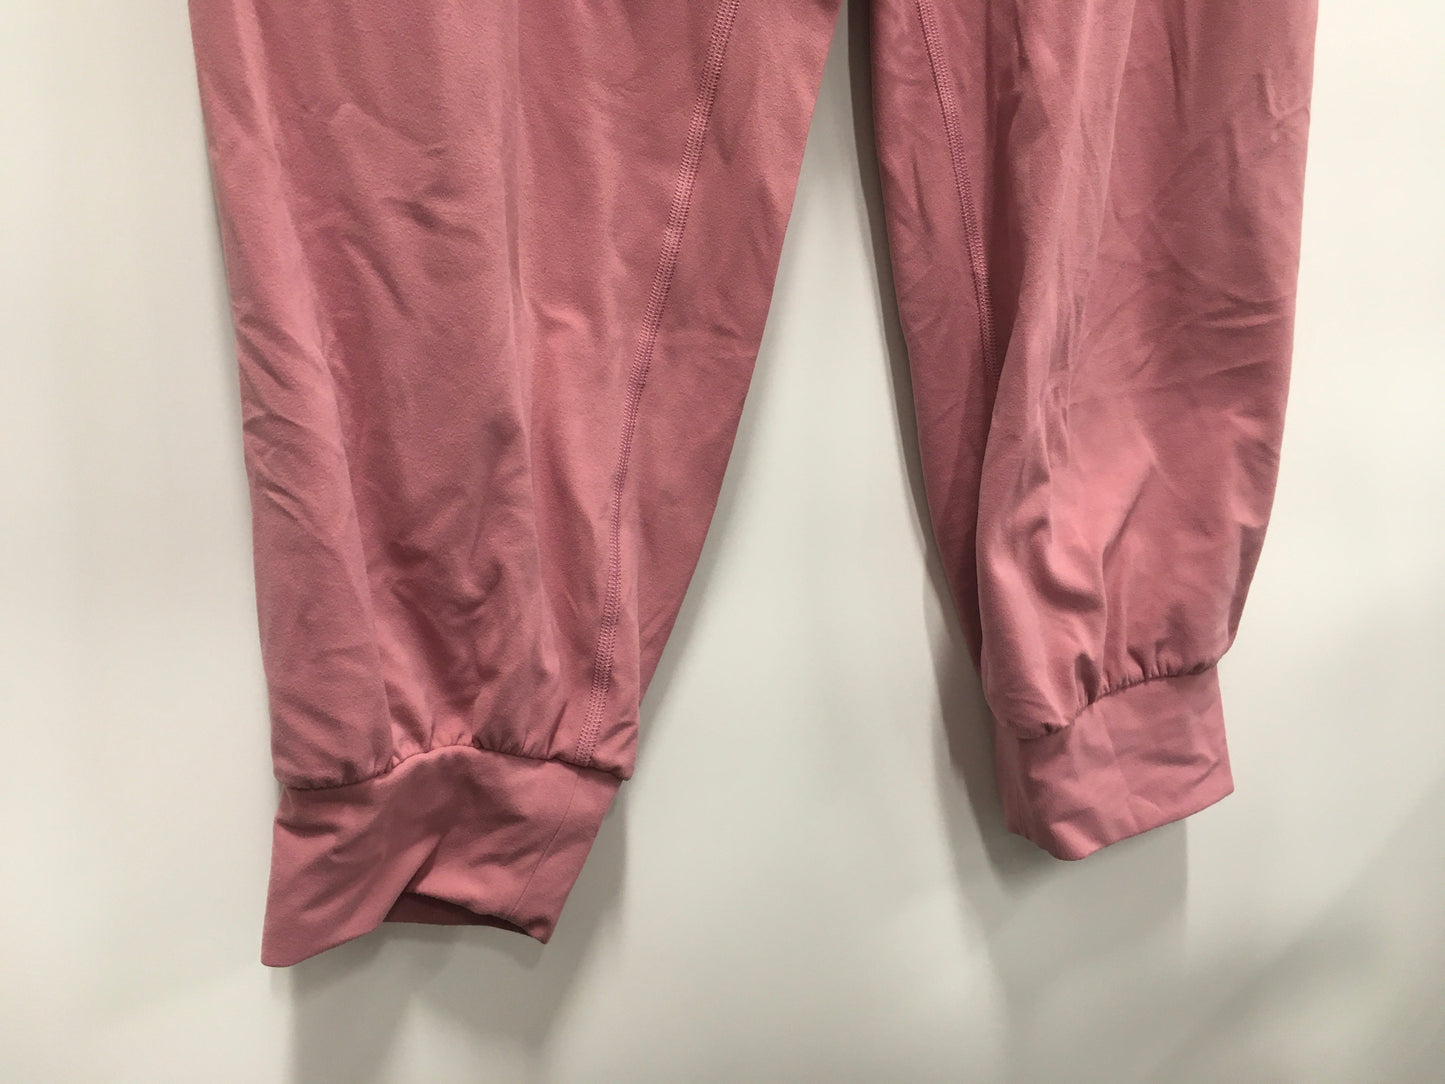 Pink Athletic Shorts Athleta, Size 1x